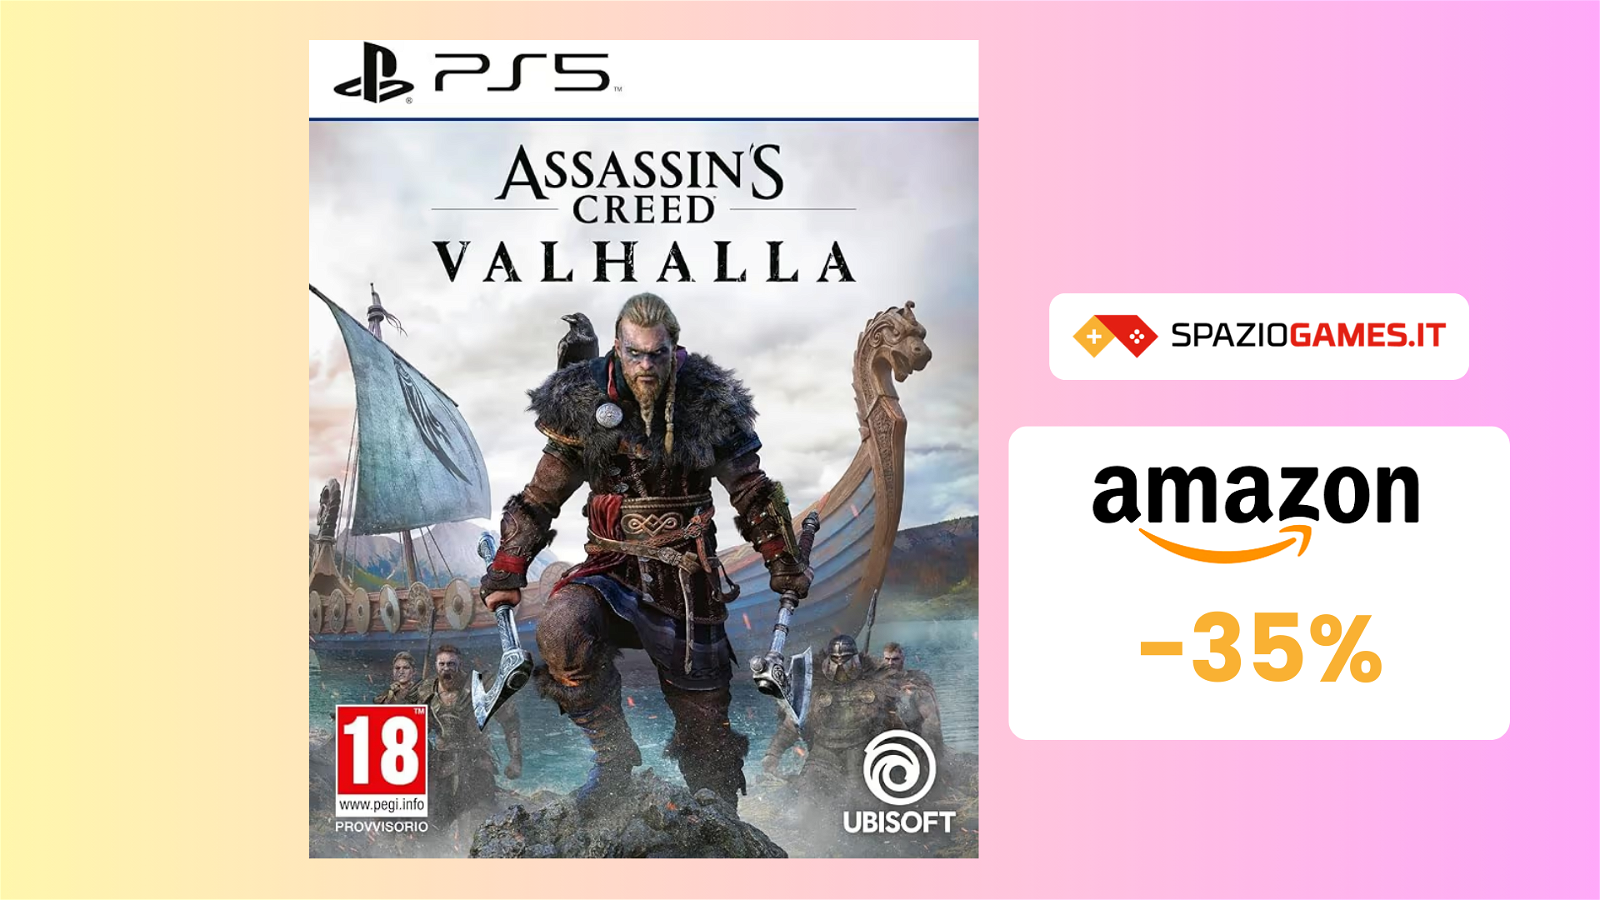 Assassin's Creed Valhalla per PS5 a SOLO 19€: la saga vi aspetta!